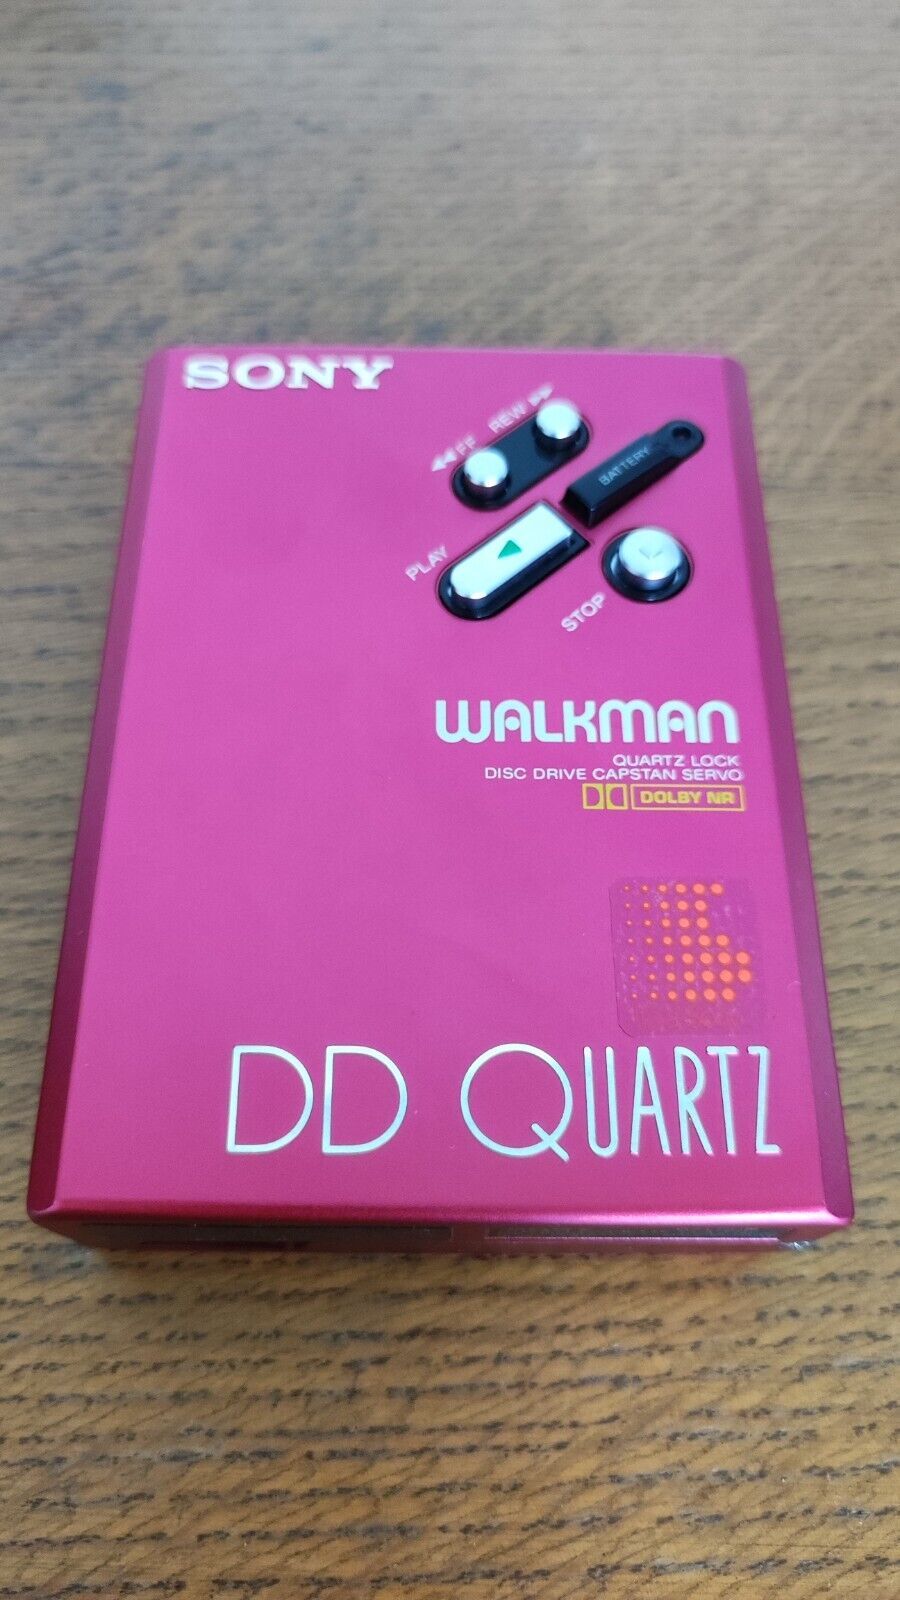 Sony Walkman DD III